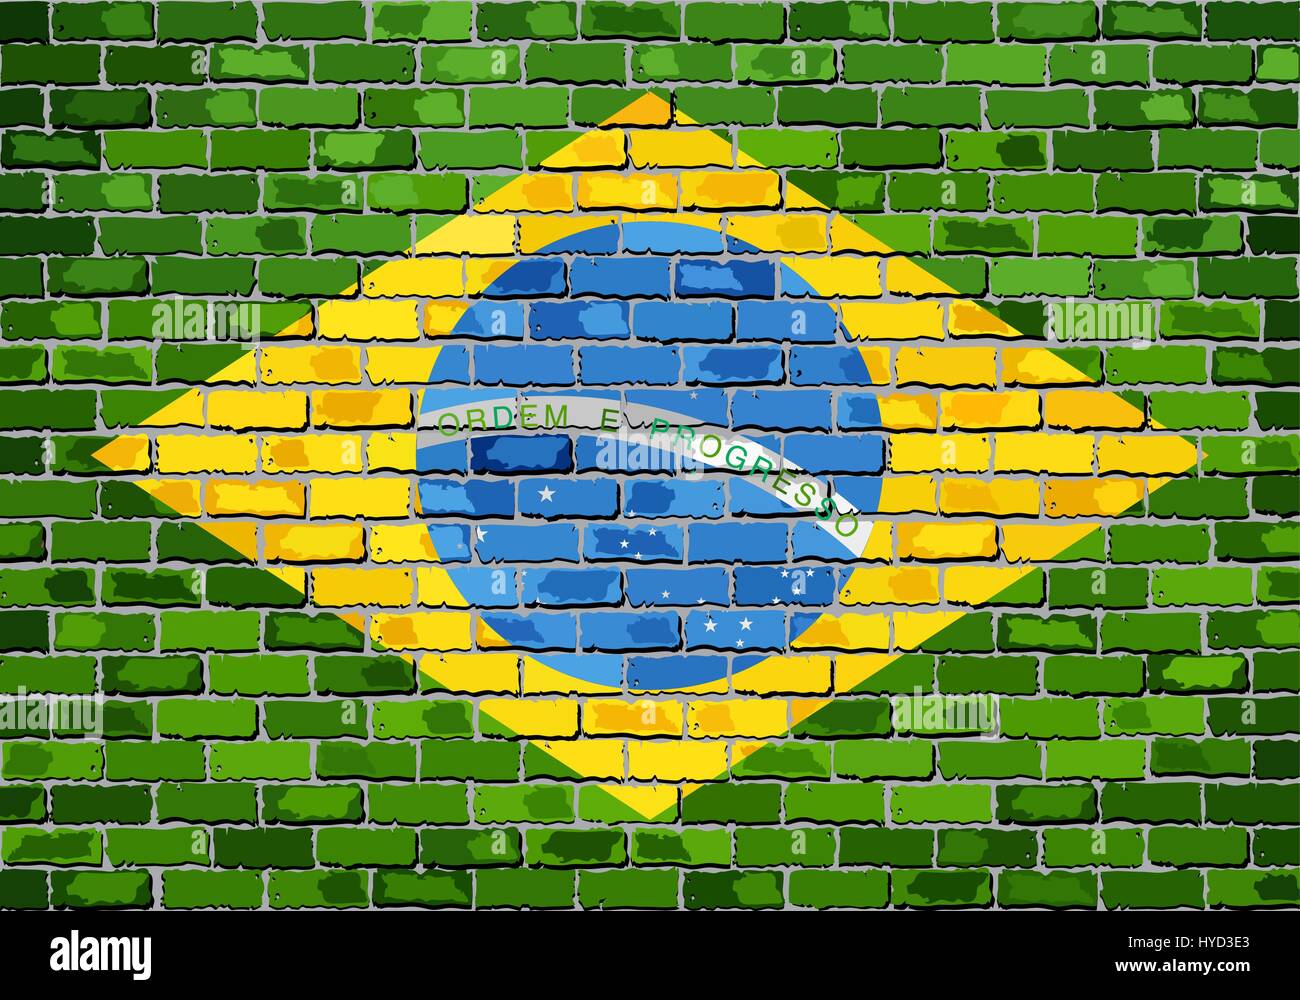 Drapeau du Brésil sur un mur - Illustration, drapeau brésilien peint sur mur de briques, le Brésil drapeau dans le style brique Illustration de Vecteur